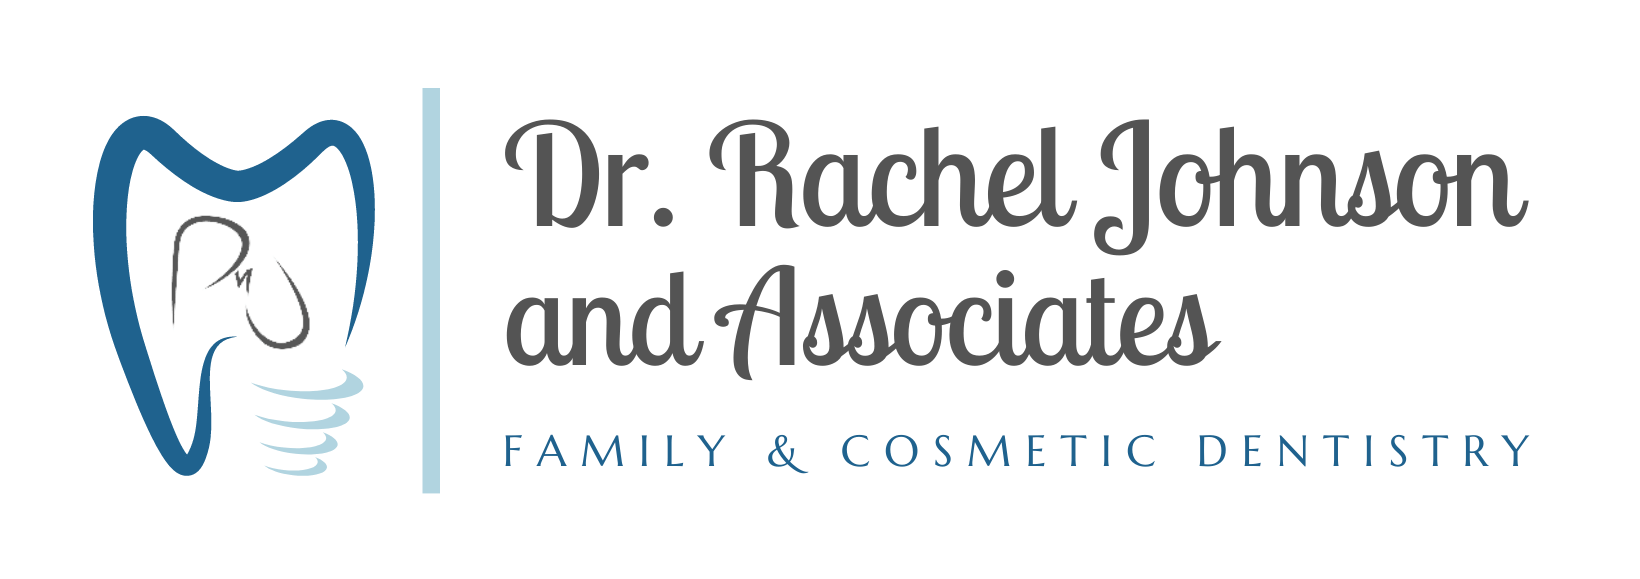 Rachel E. Johnson , D.M.D Family & Cosmetic Dentistry